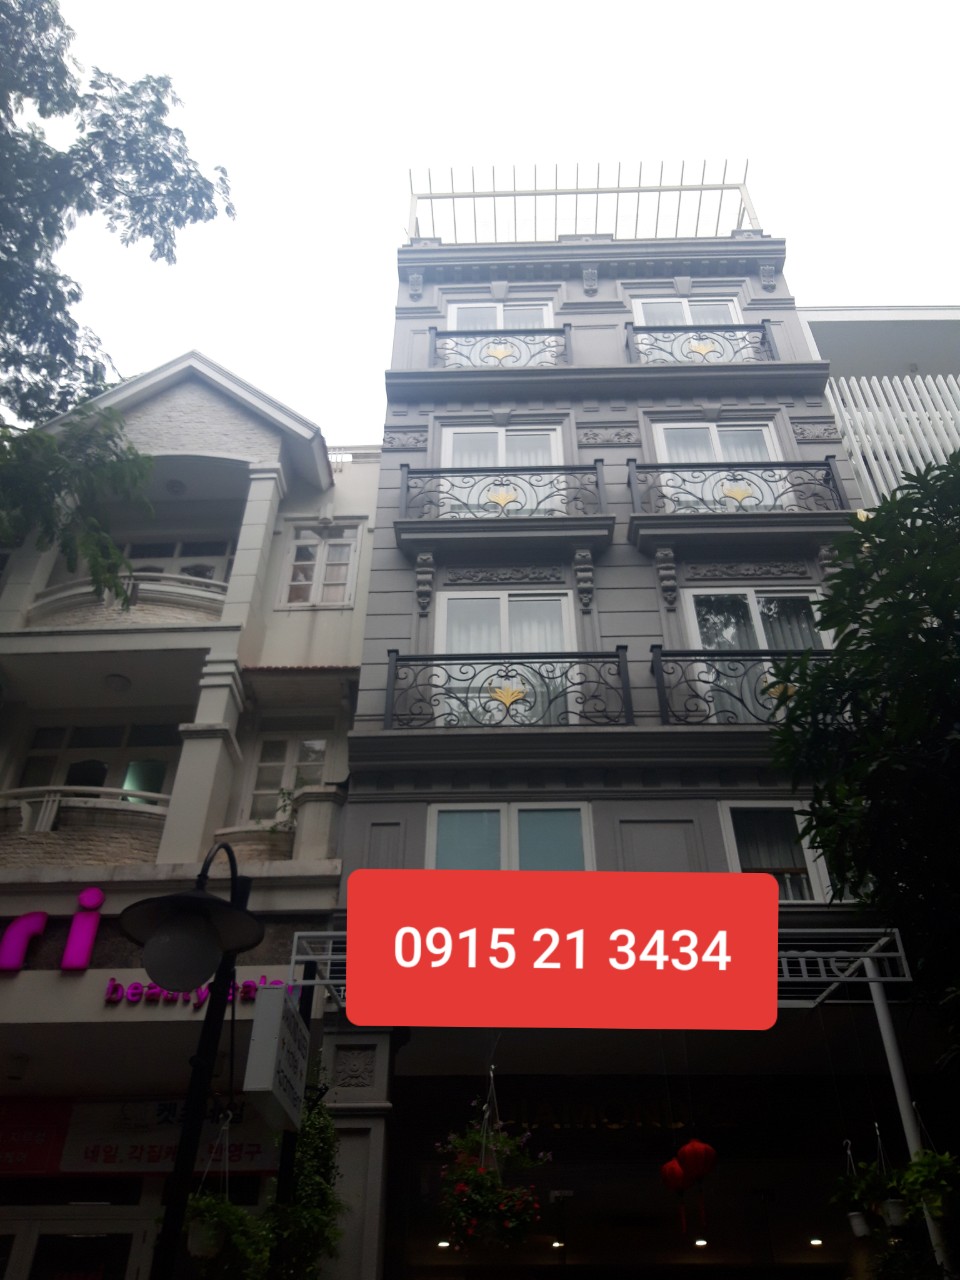 Cho thuê khách sạn cao cấp mới đẹp khu Hưng Gia ở Phú Mỹ Hưng, Quận 7 LH: 0915 21 3434 PHONG.